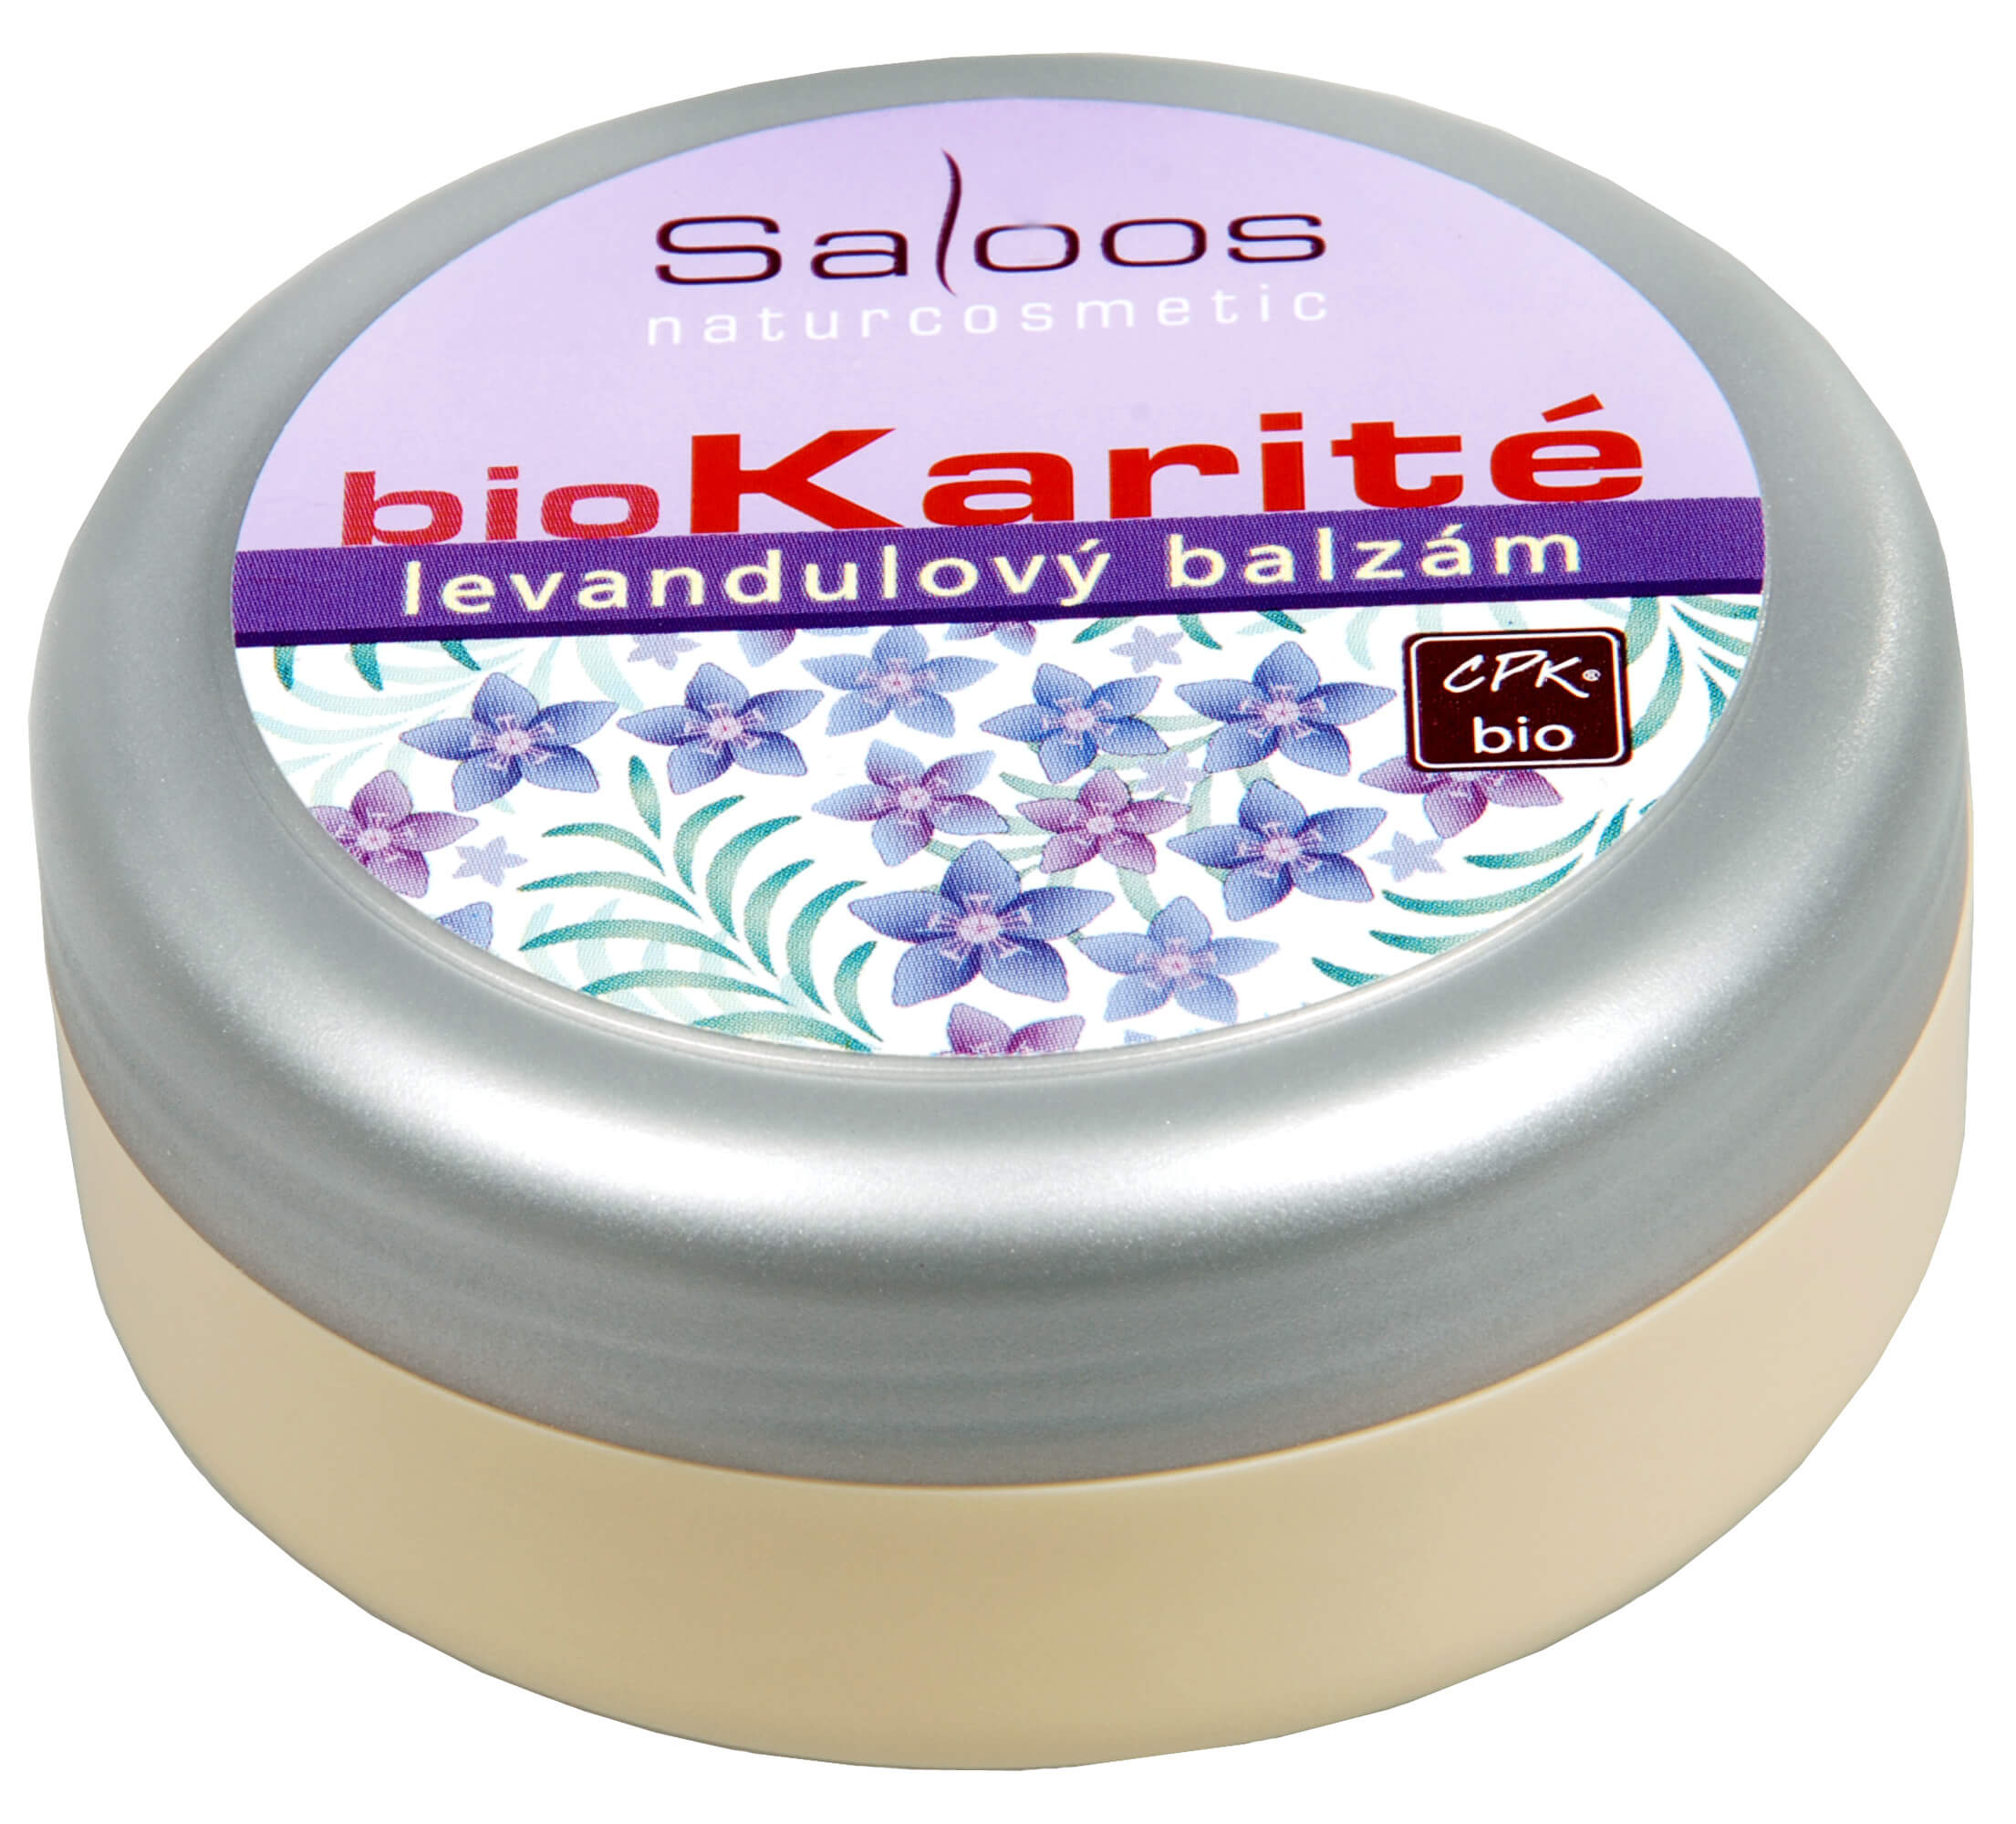 Zobrazit detail výrobku Saloos Bio Karité balzám - Levandulový 50 ml + 2 měsíce na vrácení zboží